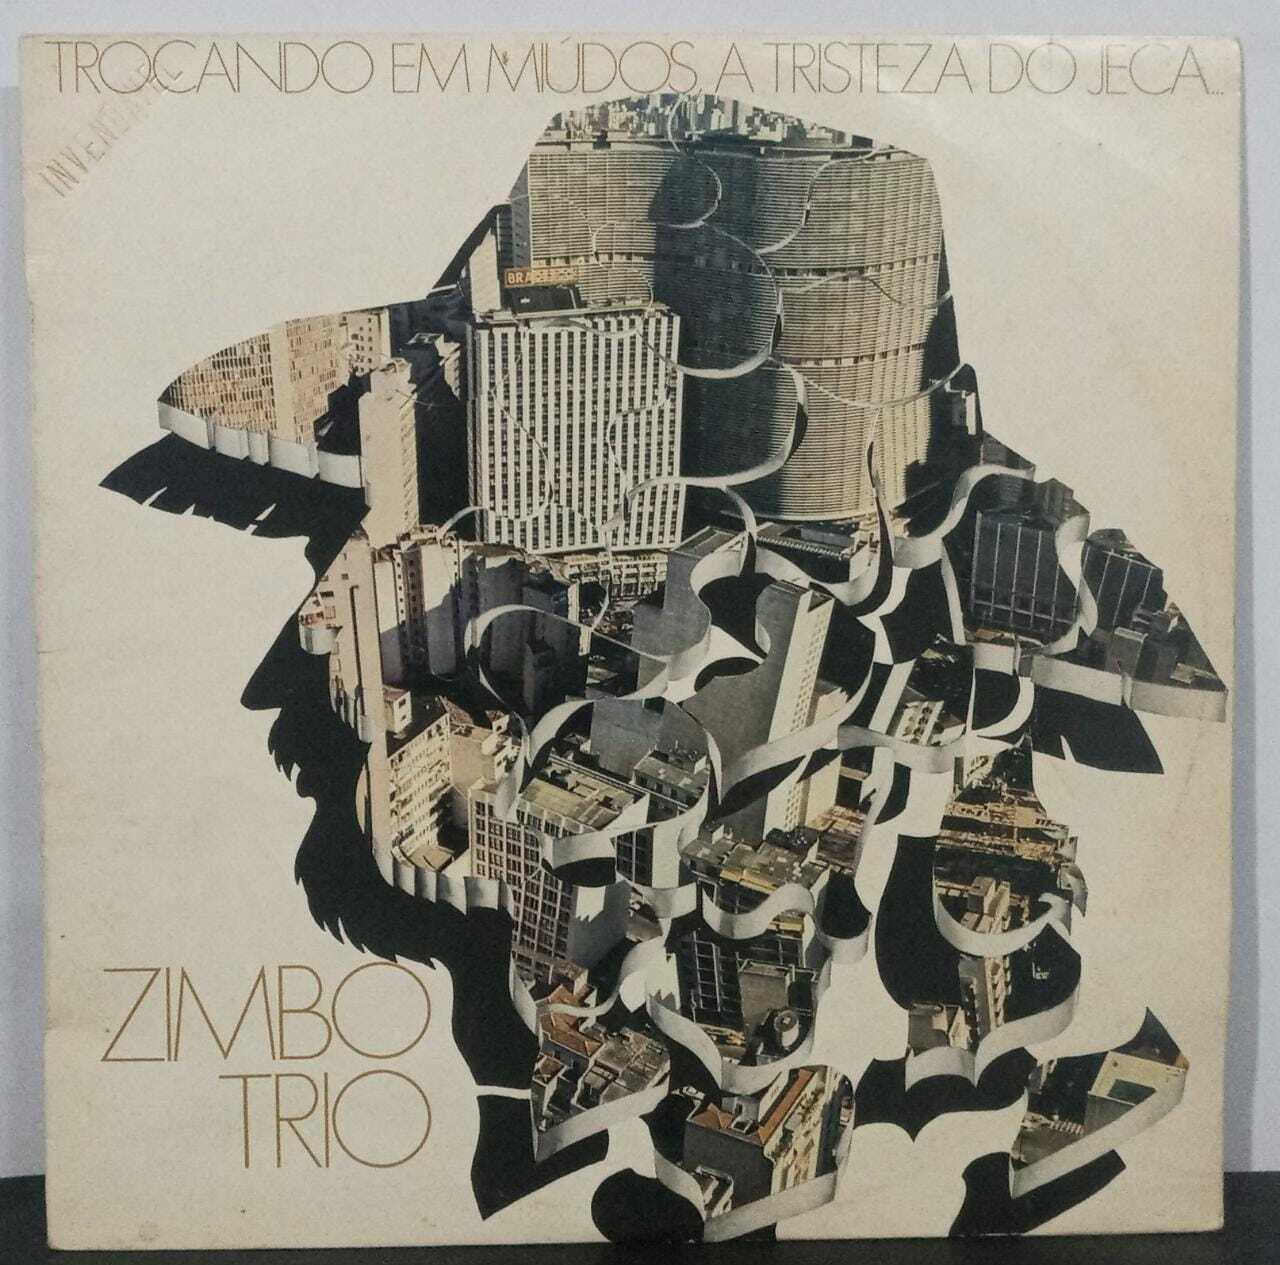 Vinil - Zimbo Trio - Trocando Em Miúdos, A Tristeza Do Jeca (Autografado)